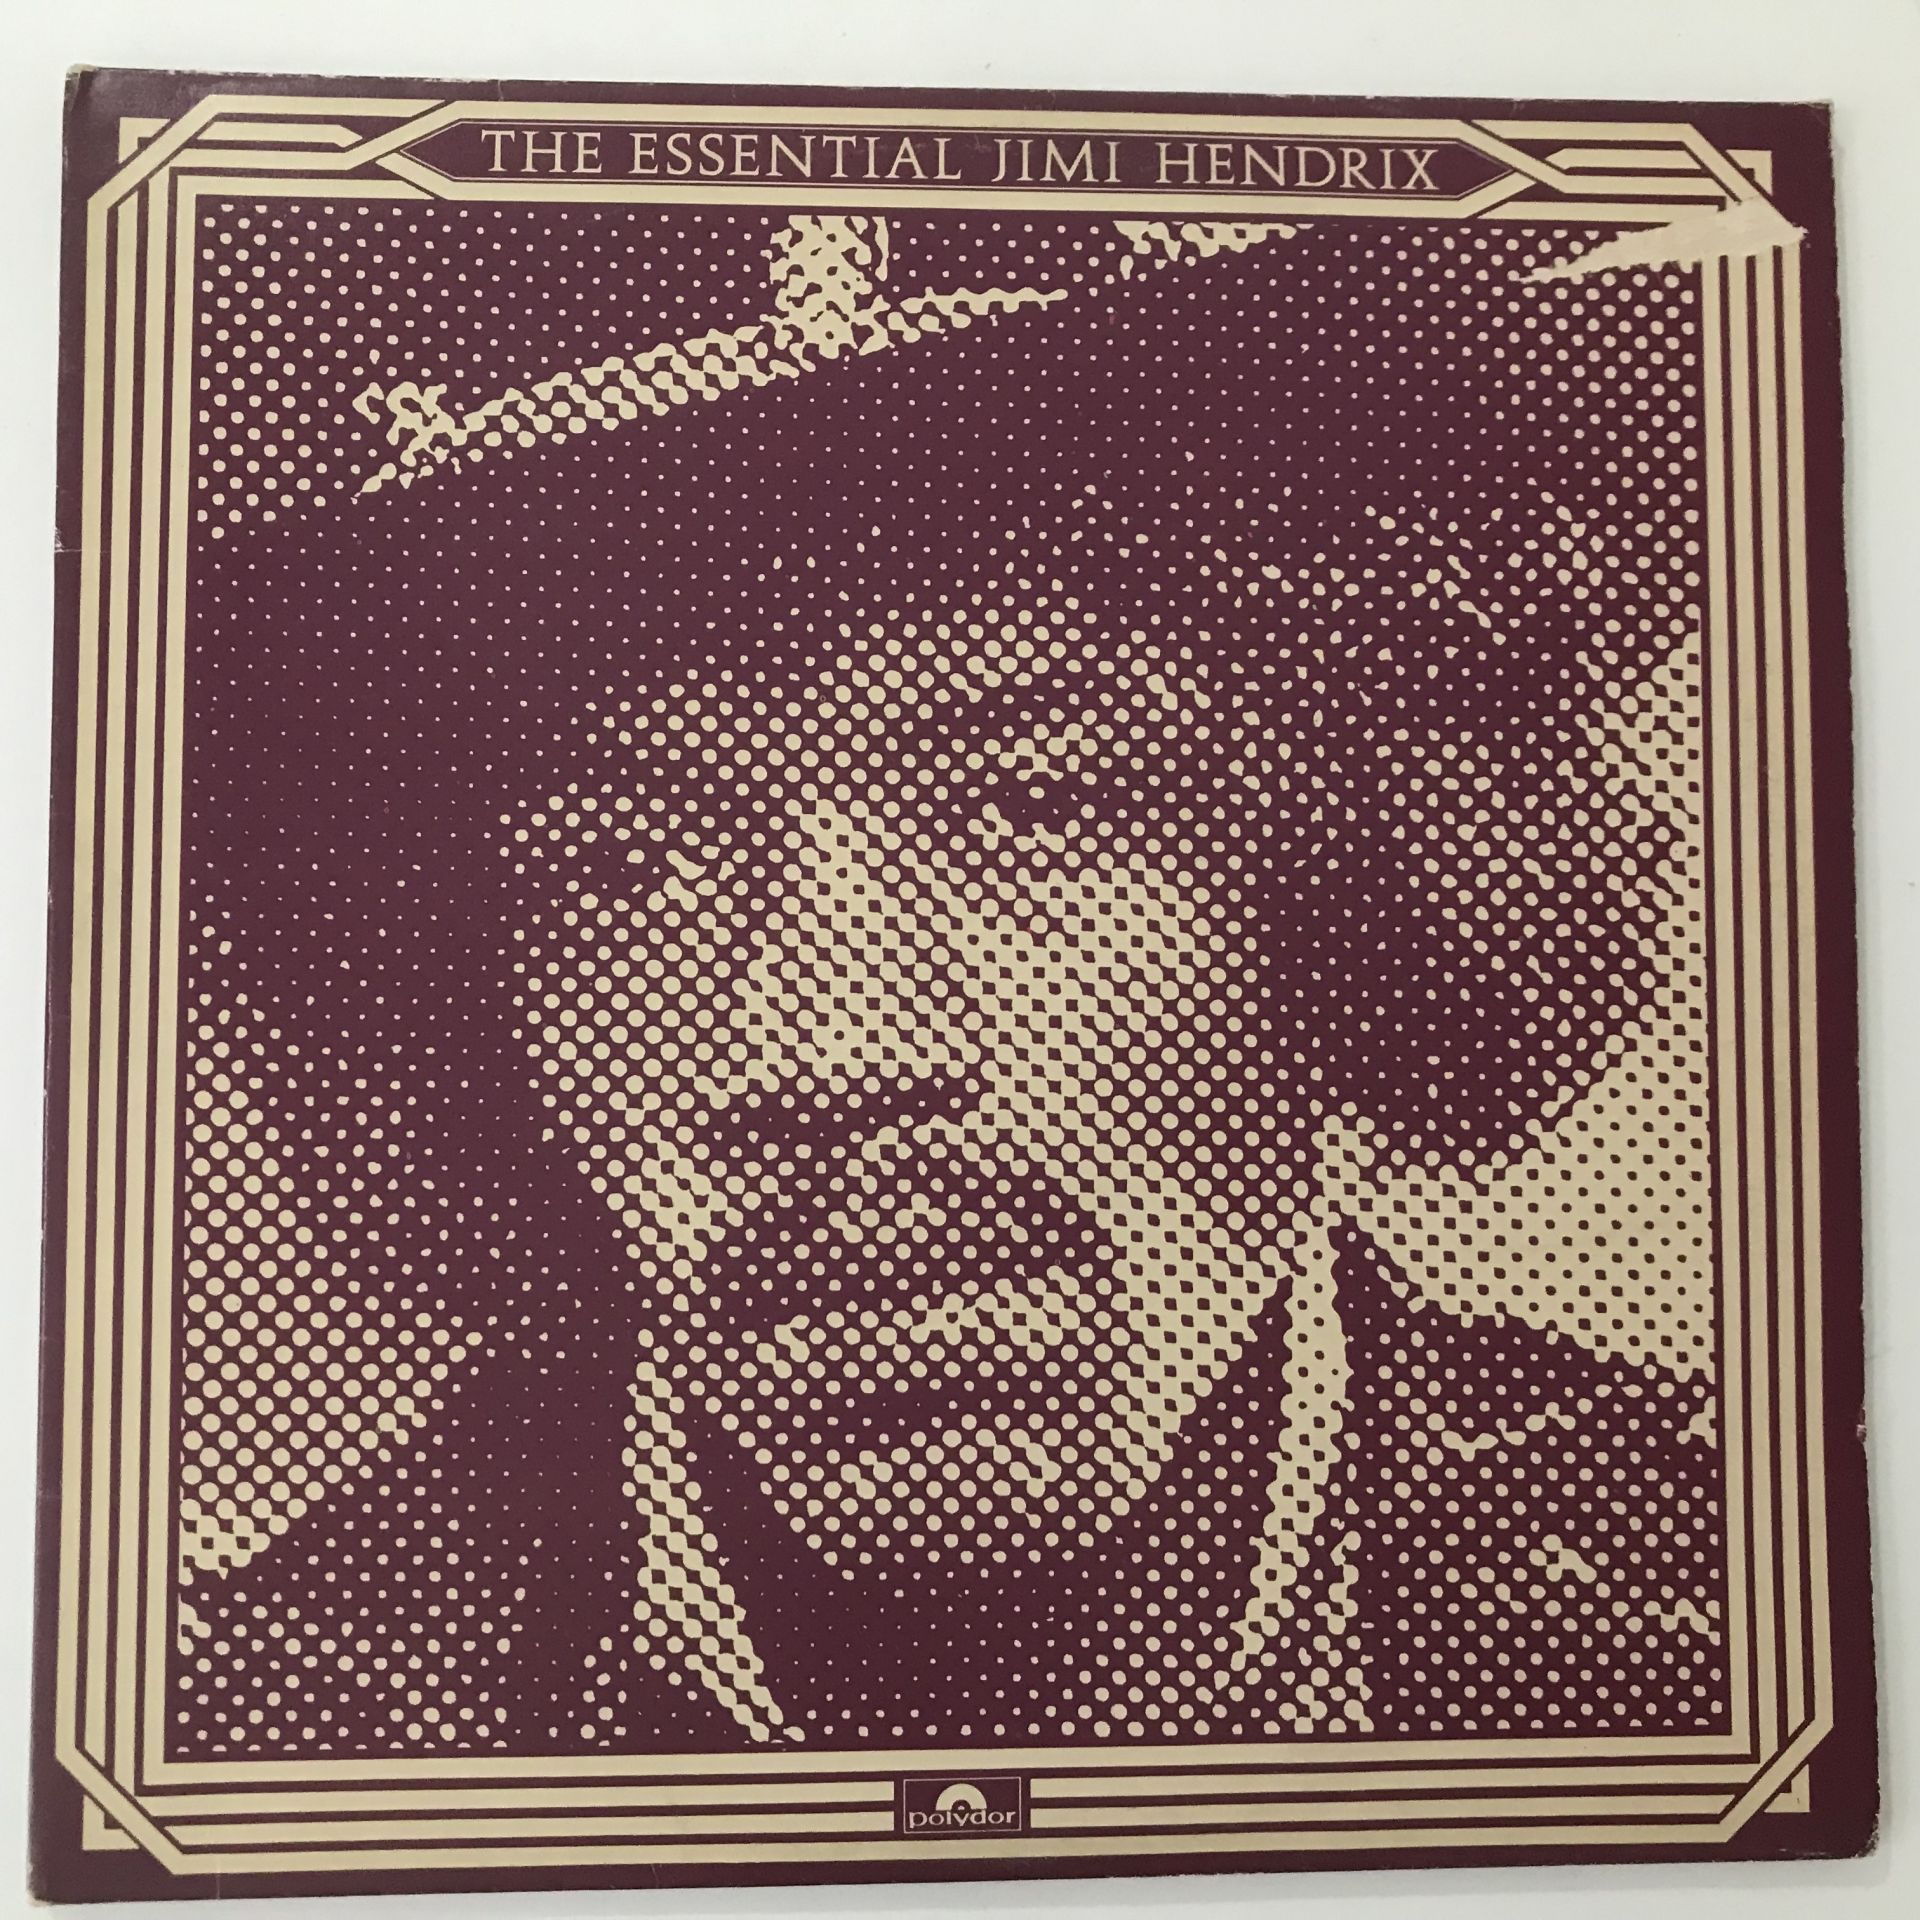 Jimi Hendrix – The Essential Jimi Hendrix 2 LP